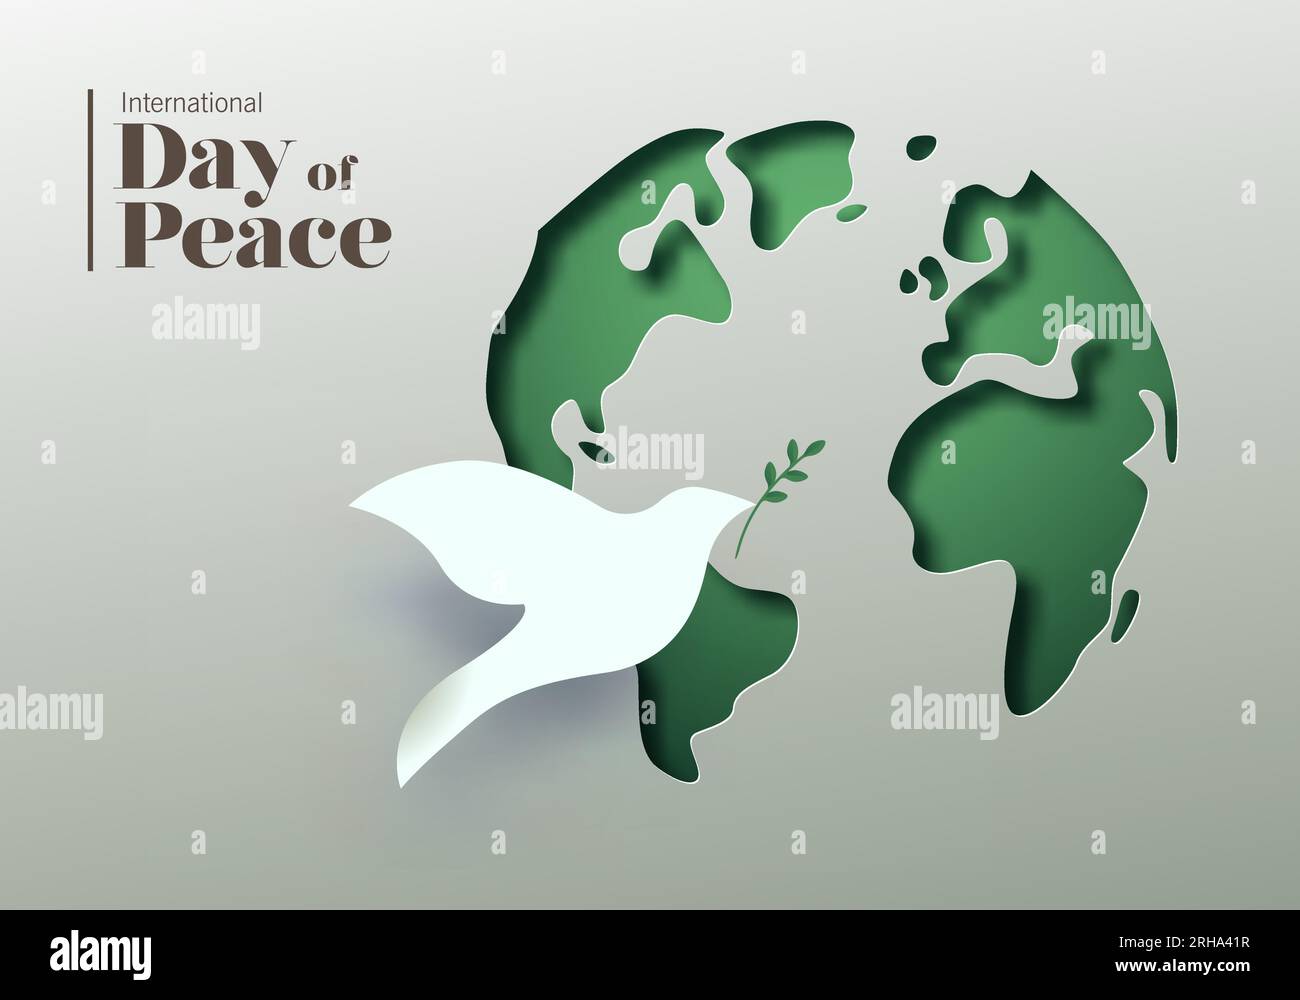 Illustrazione della carta vettoriale della giornata internazionale della pace. Mappa del mondo 3D papercut e simbolo dell'uccello colomba bianco. Design grafico per celebrare gli ideali di pace Illustrazione Vettoriale